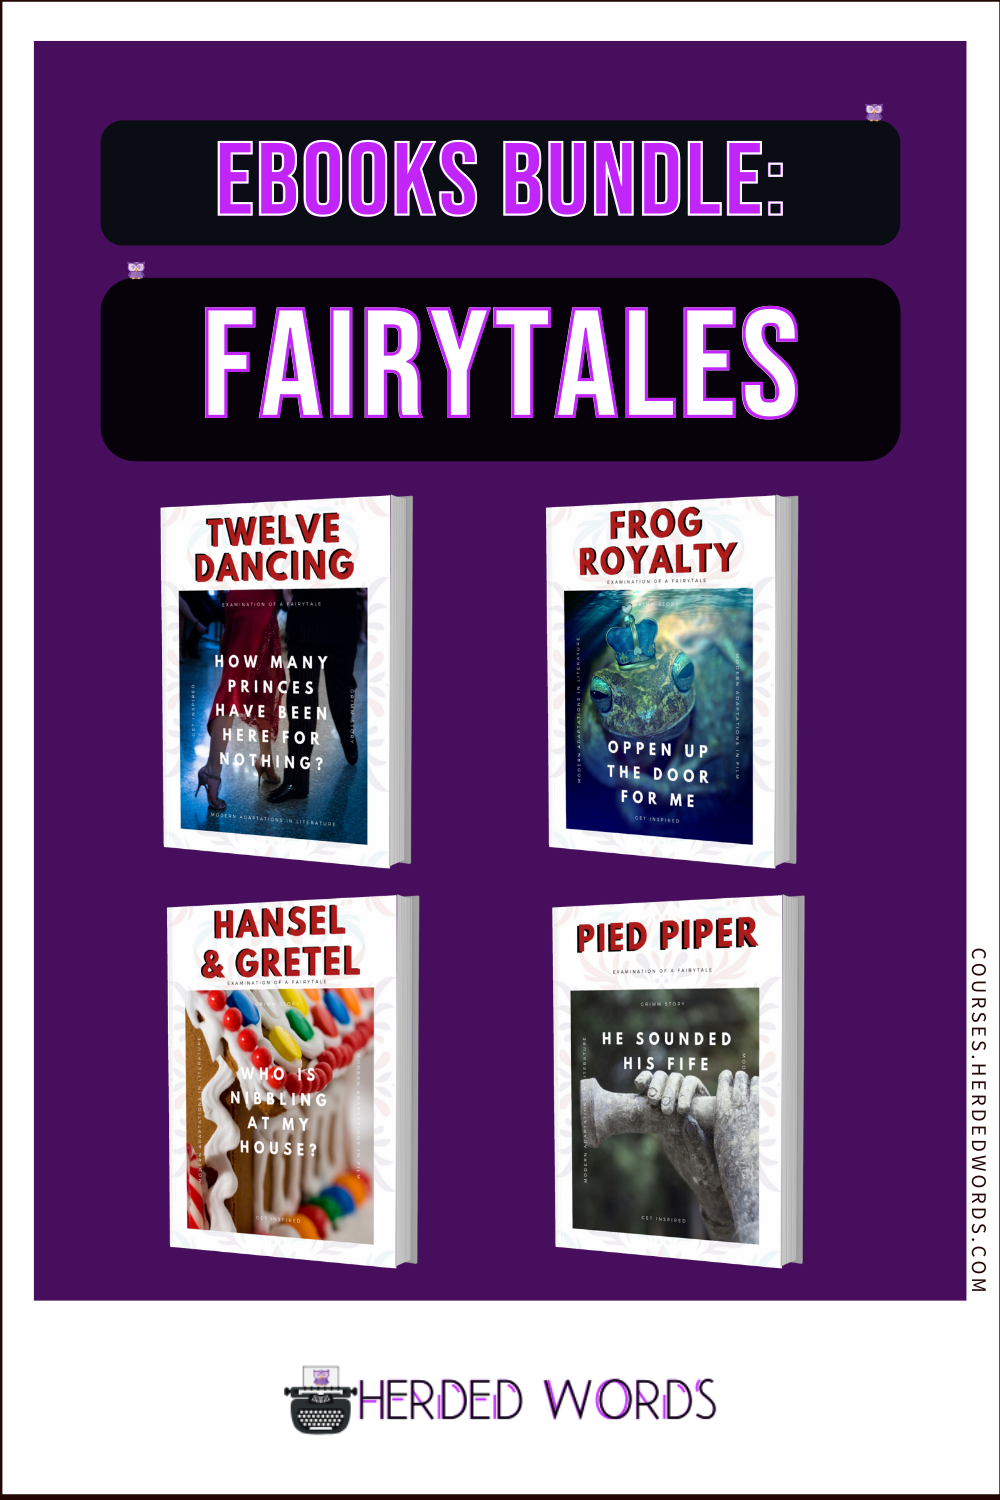 Buy a Bundle of 4 Fairytale eBooks: Twelve Dancing, Frog Royalty, Hansel & Gretel, Pied Piper